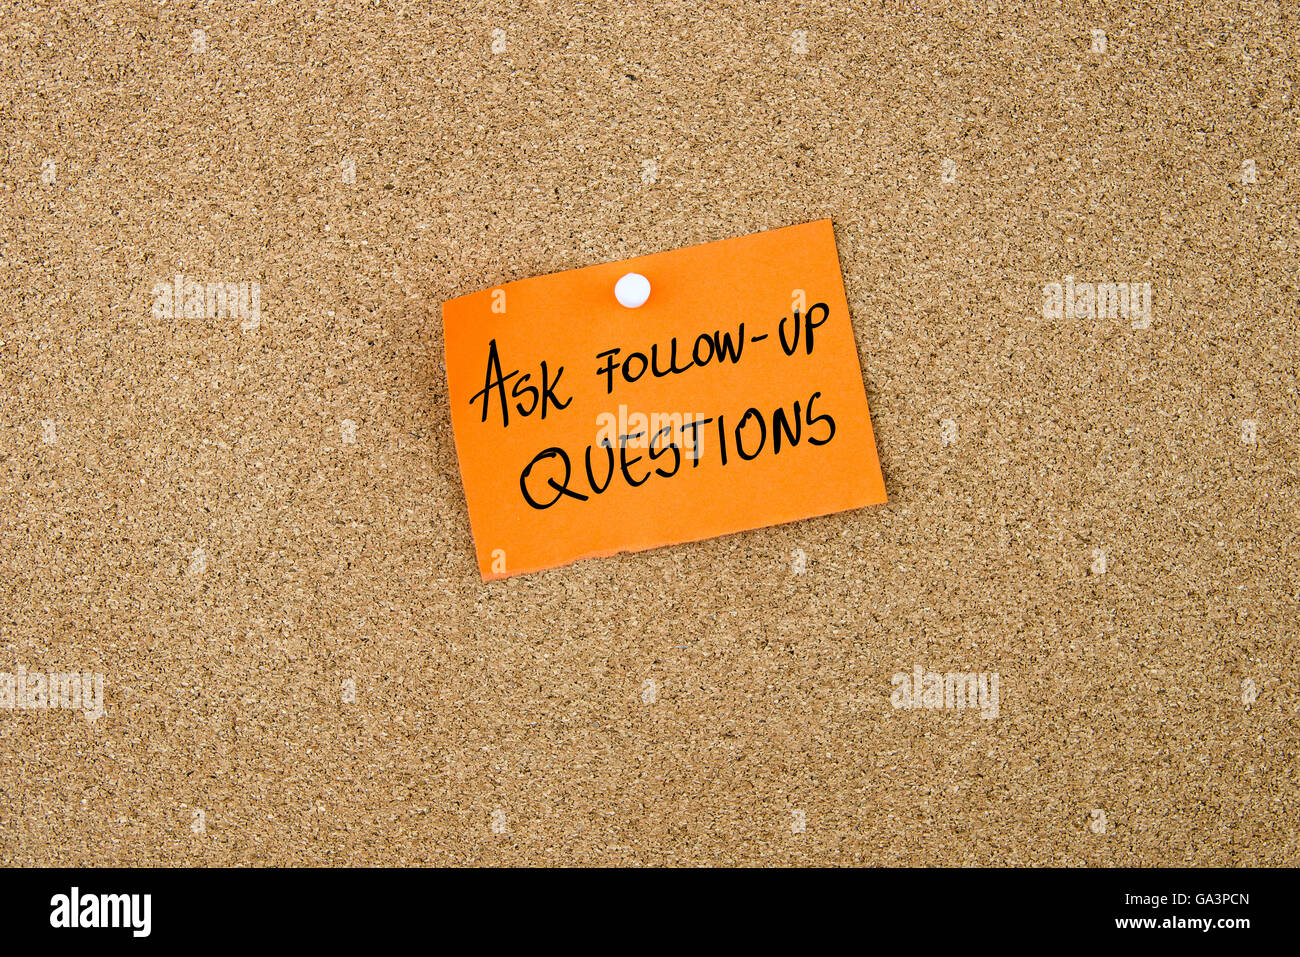 Fragen Sie Follow-up Fragen geschrieben am orangefarbenen Papier Hinweis Hinweis auf Pinnwand mit weißen Reißzwecke, Kopie Speicherplatz angeheftet Stockfoto